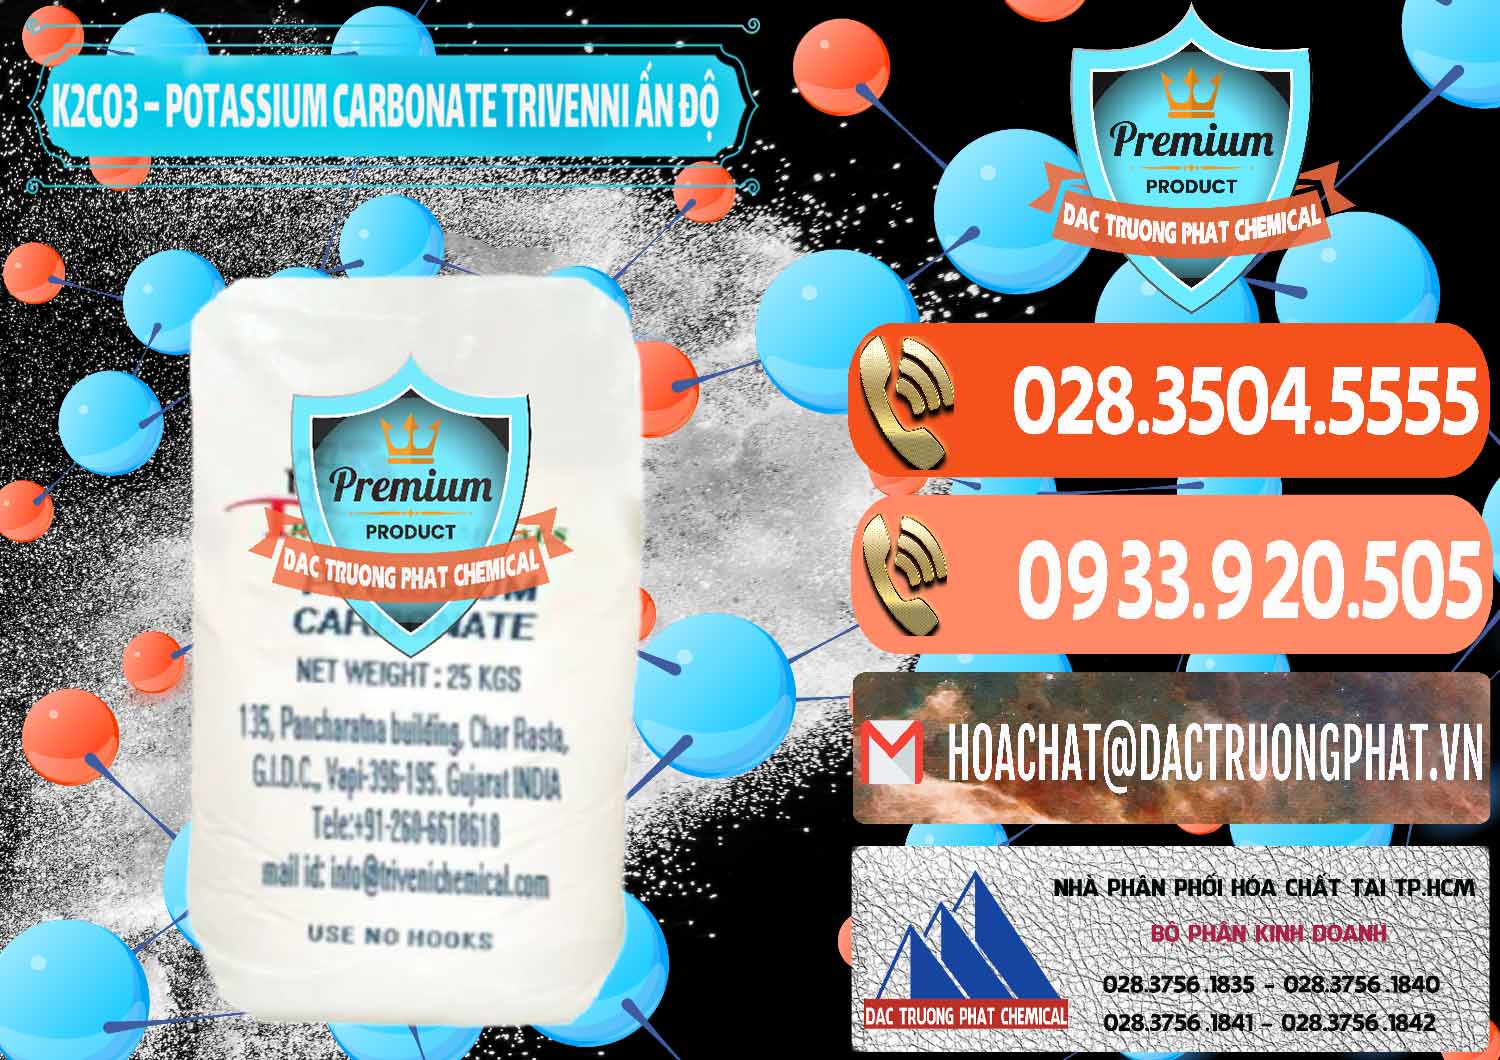 Đơn vị chuyên cung cấp - bán K2Co3 – Potassium Carbonate Trivenni Ấn Độ India - 0473 - Nơi chuyên kinh doanh và phân phối hóa chất tại TP.HCM - hoachatmientay.com